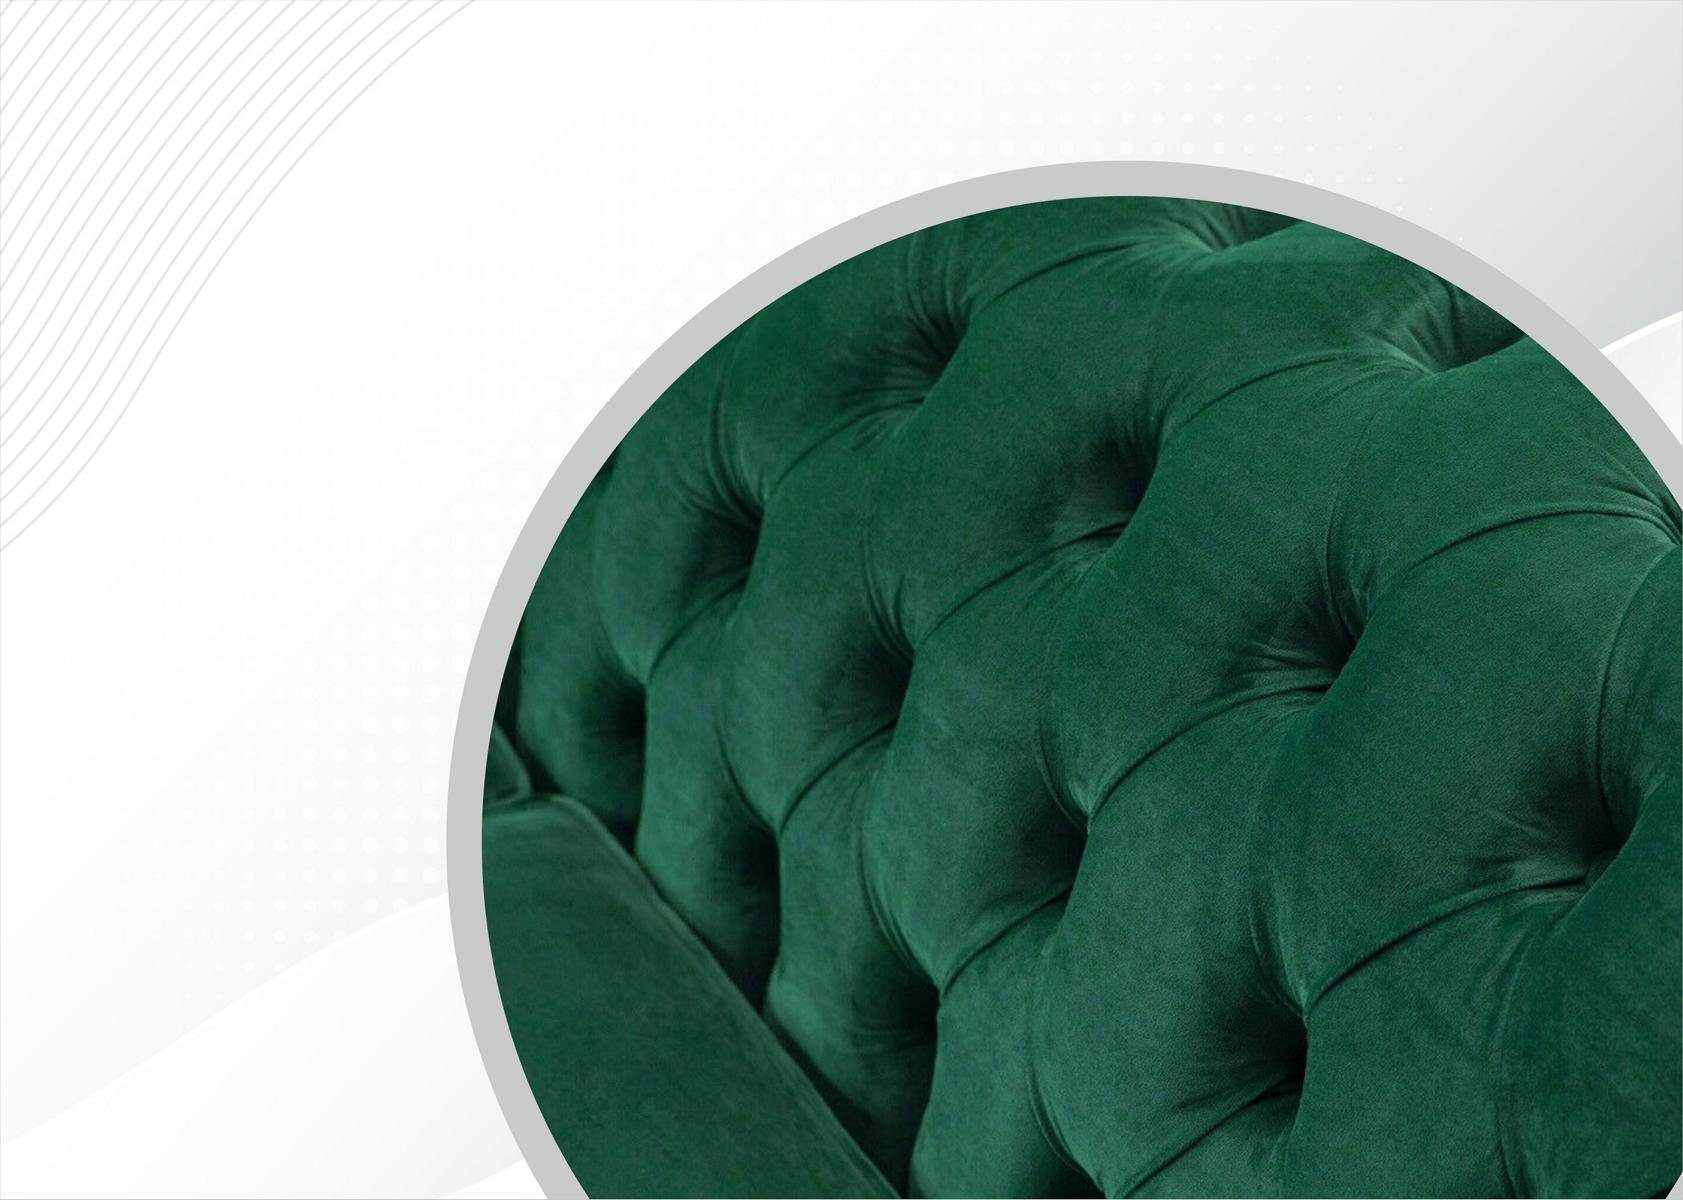 Made Moderner Neu Europe in Chesterfield-Sofa Luxus Möbel grüner 3-er Dreisitzer JVmoebel Polstermöbel,